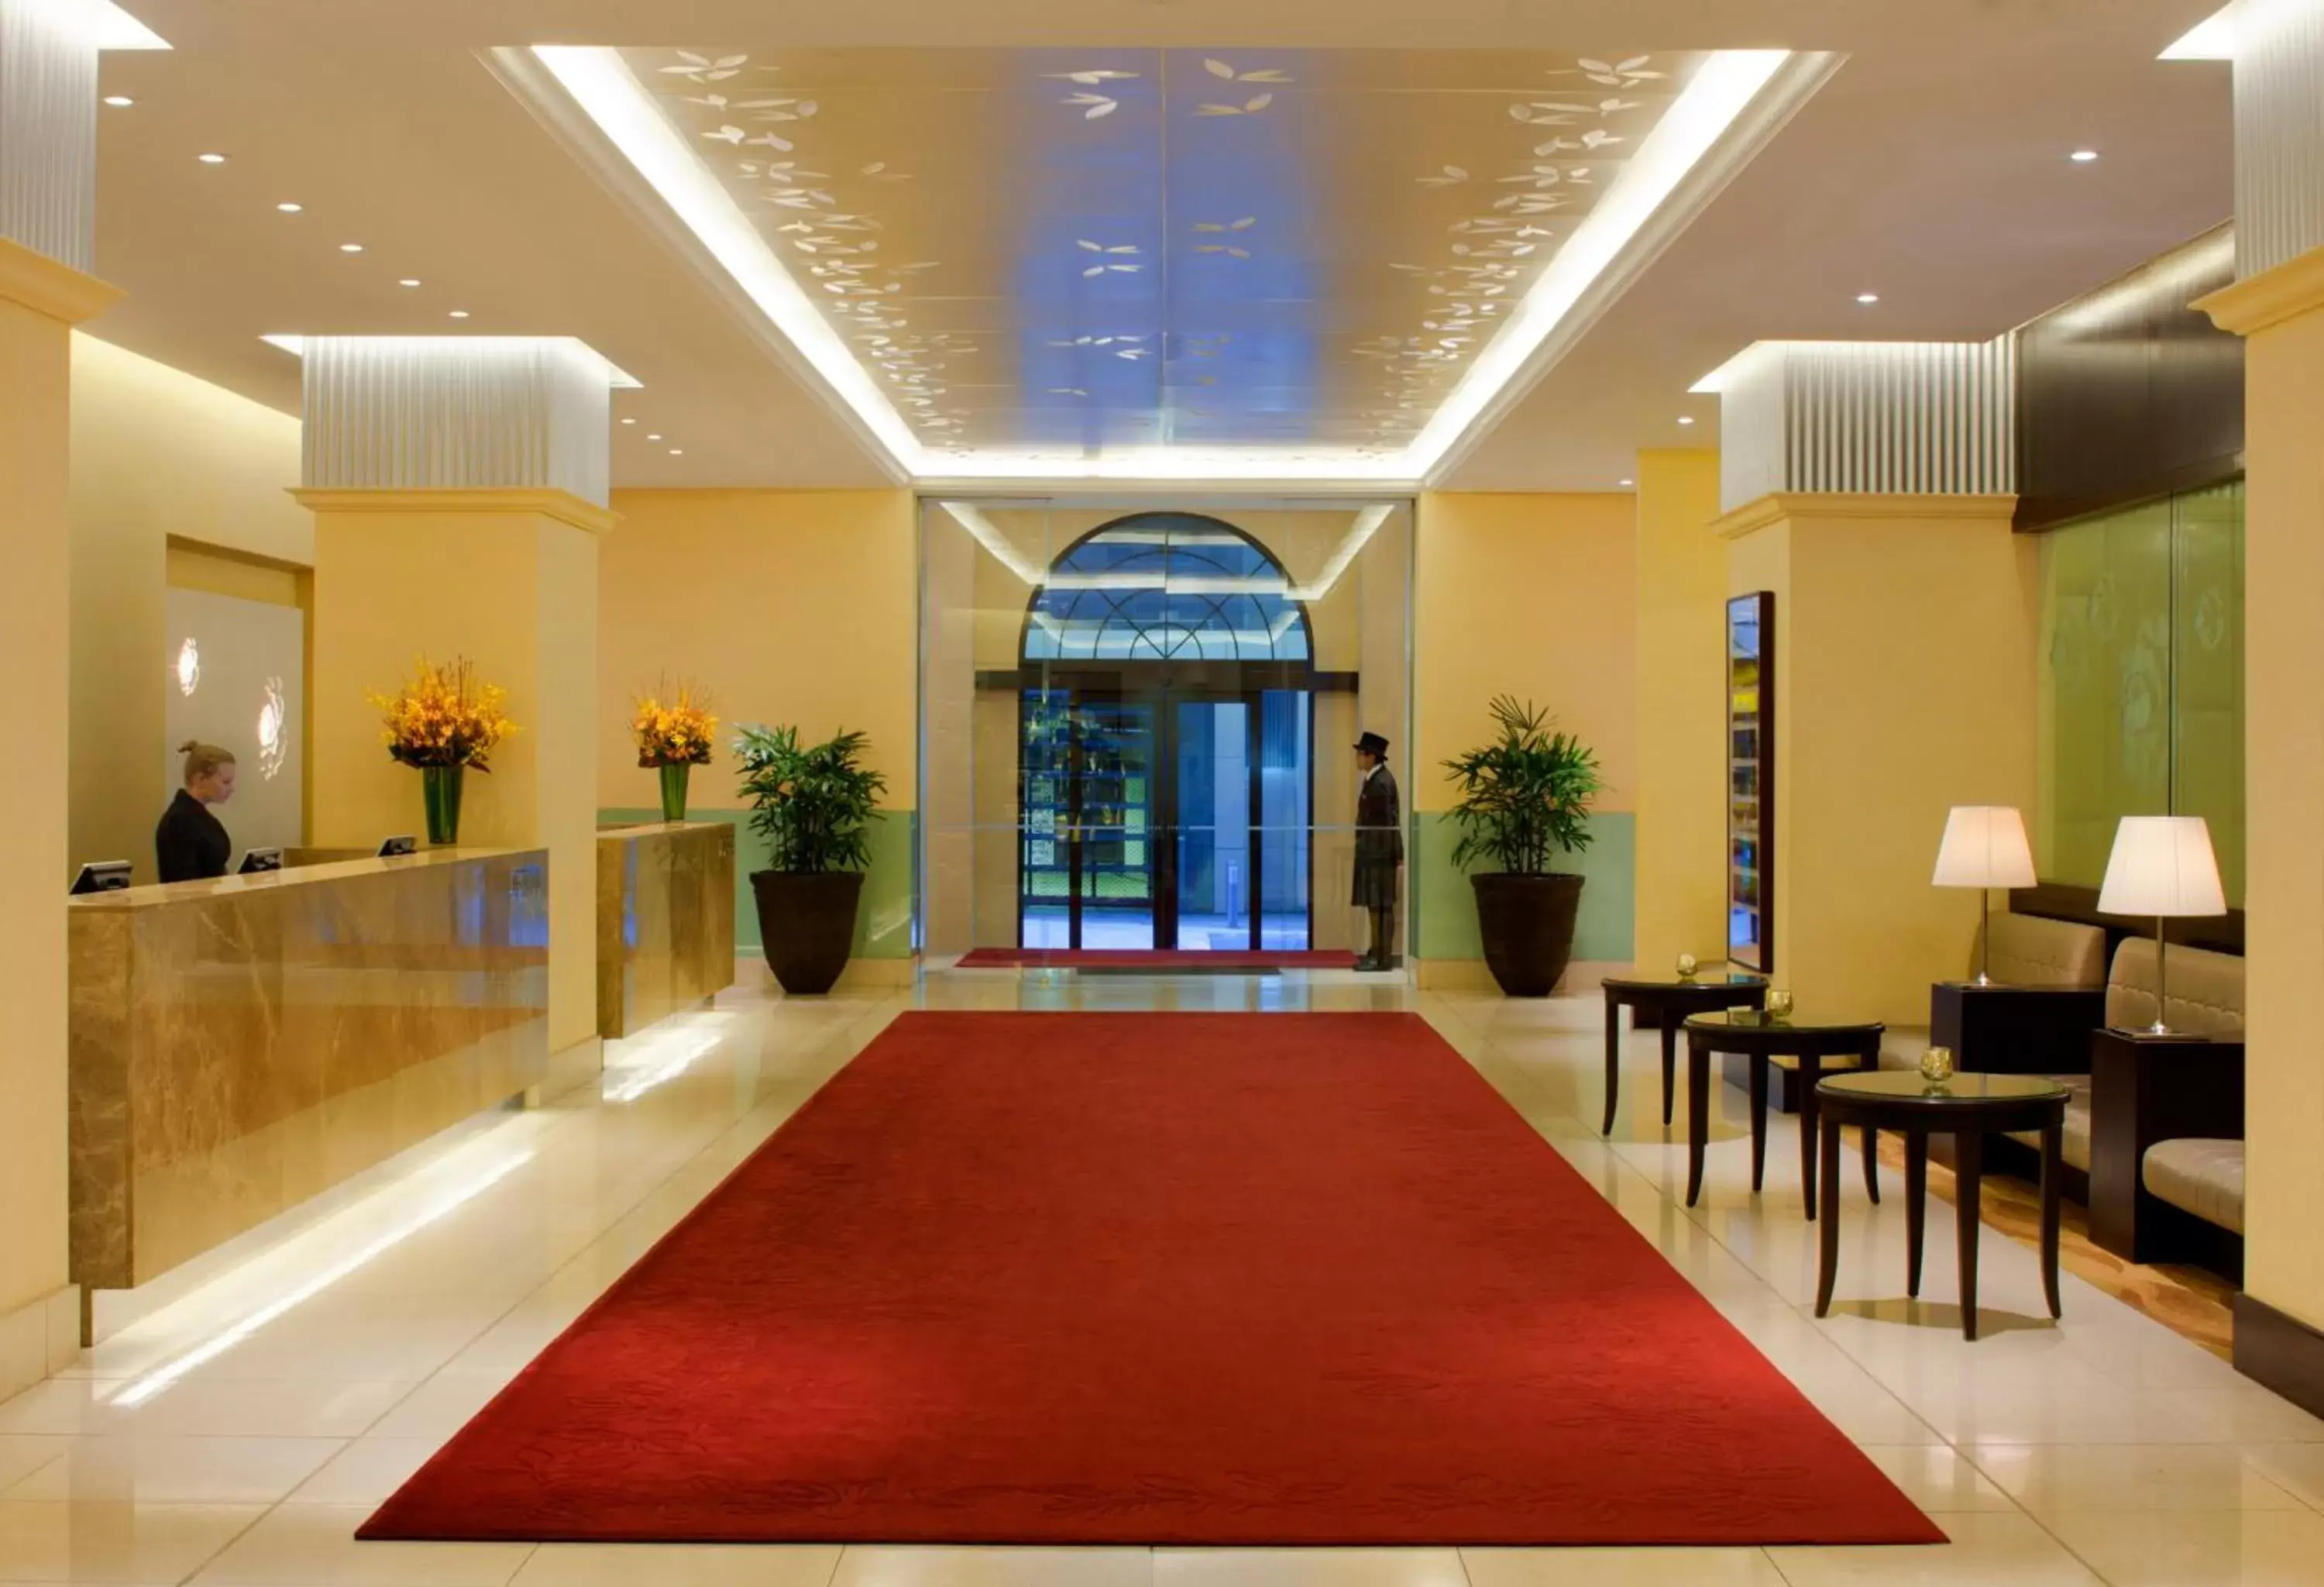 Lobby or reception in Radisson Blu Plaza Hotel Sydney